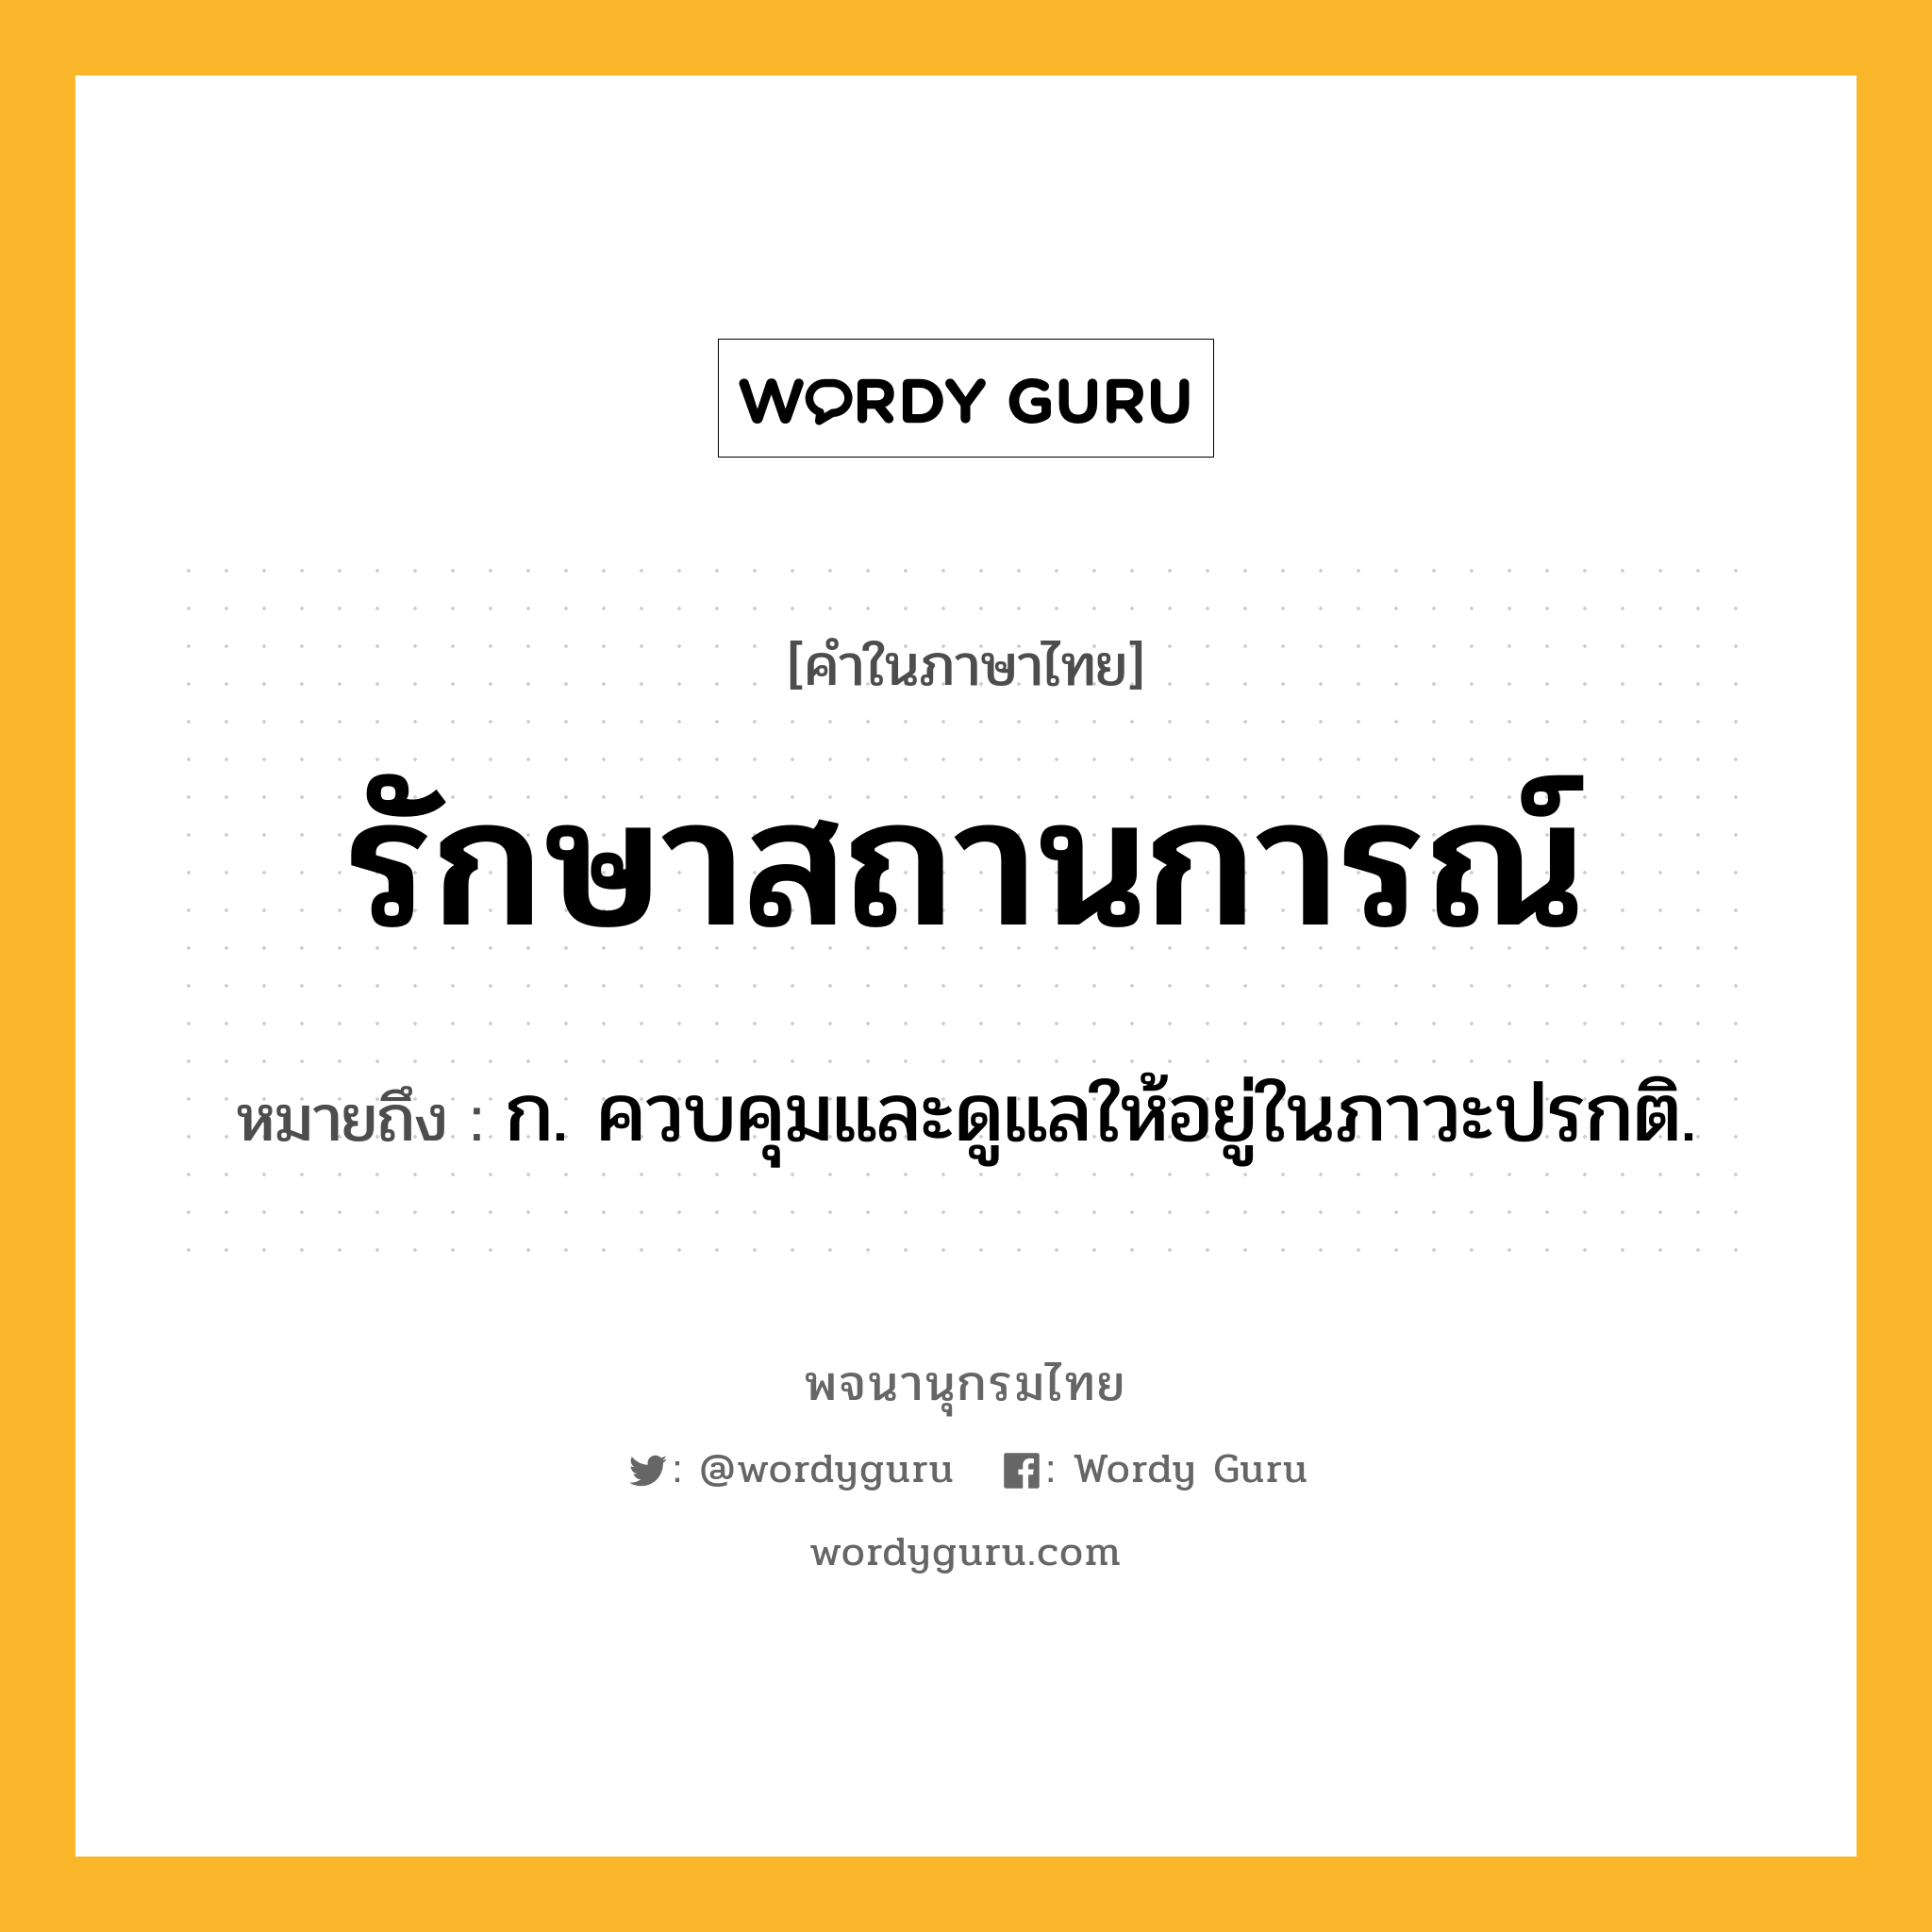 รักษาสถานการณ์ หมายถึงอะไร?, คำในภาษาไทย รักษาสถานการณ์ หมายถึง ก. ควบคุมและดูแลให้อยู่ในภาวะปรกติ.